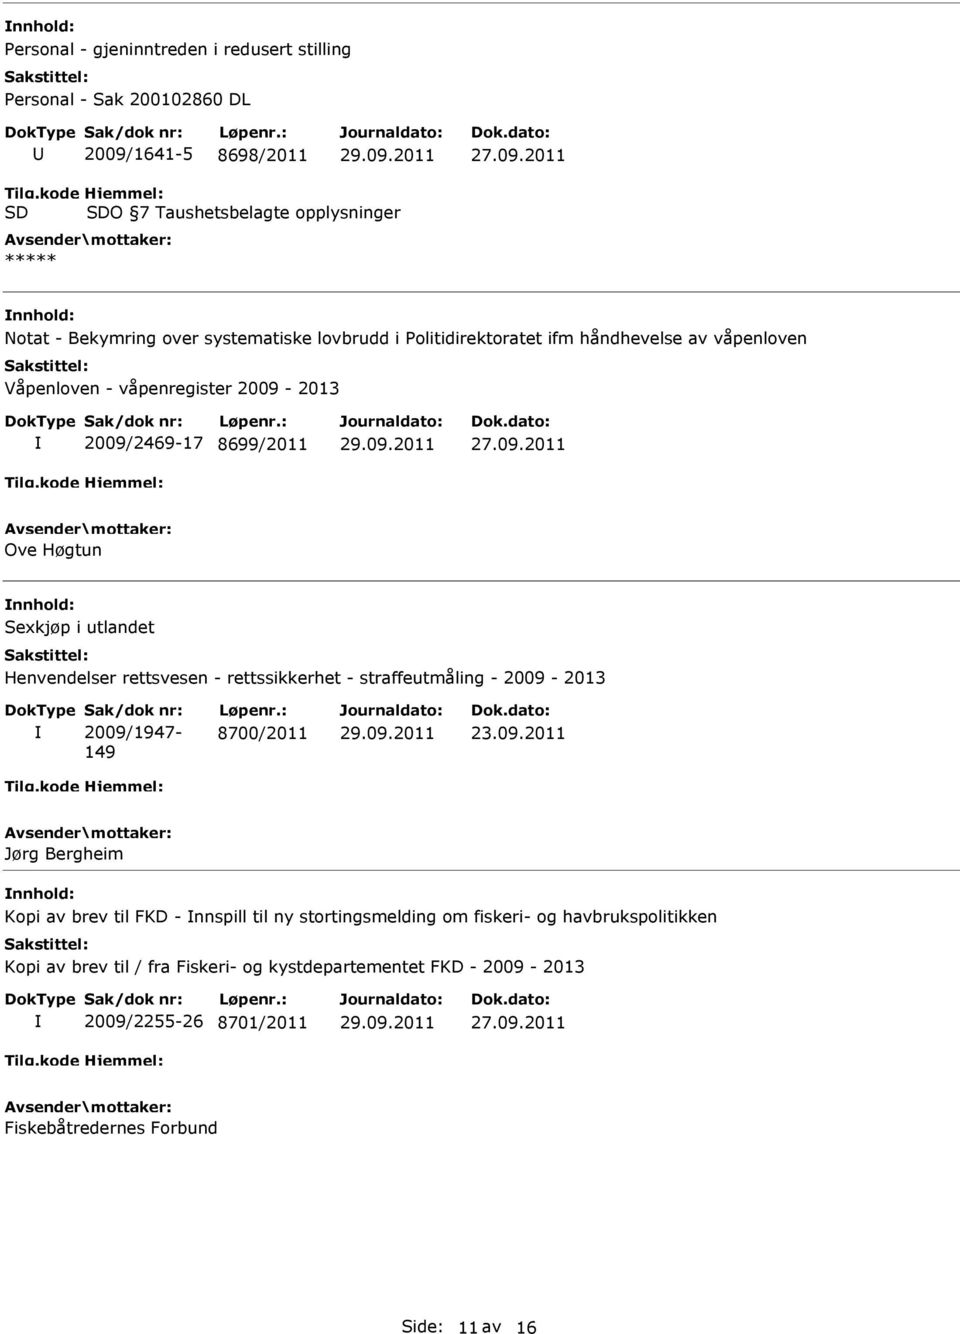 2011 Notat - Bekymring over systematiske lovbrudd i Politidirektoratet ifm håndhevelse av våpenloven Våpenloven - våpenregister 2009-2013 2009/2469-17 8699/2011 27.